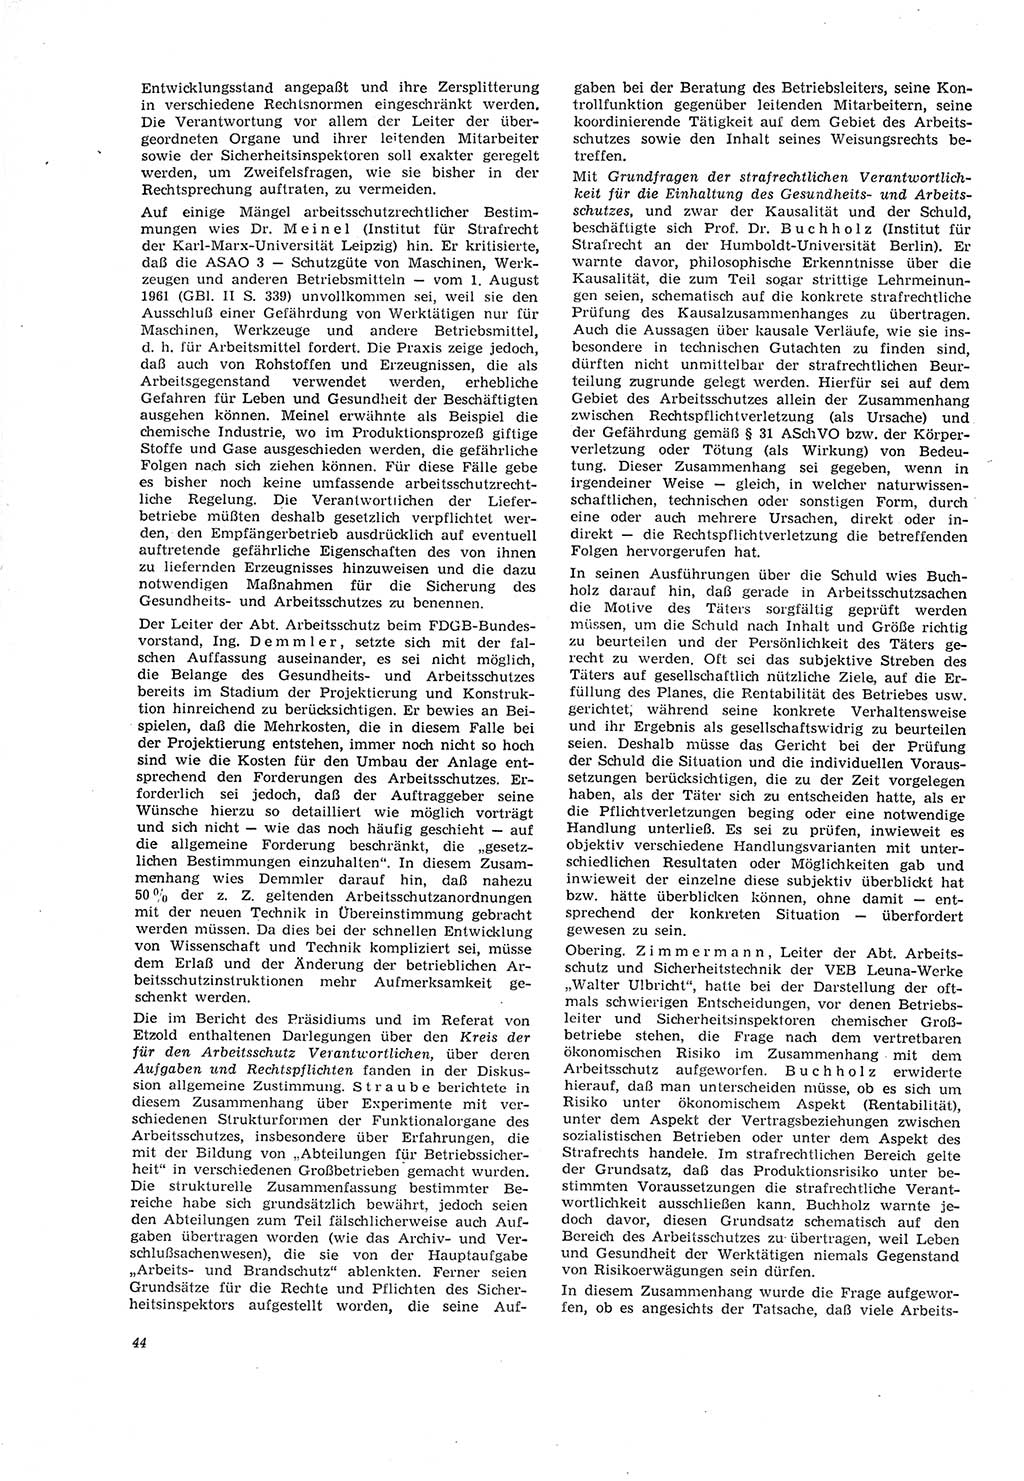 Neue Justiz (NJ), Zeitschrift für Recht und Rechtswissenschaft [Deutsche Demokratische Republik (DDR)], 20. Jahrgang 1966, Seite 44 (NJ DDR 1966, S. 44)